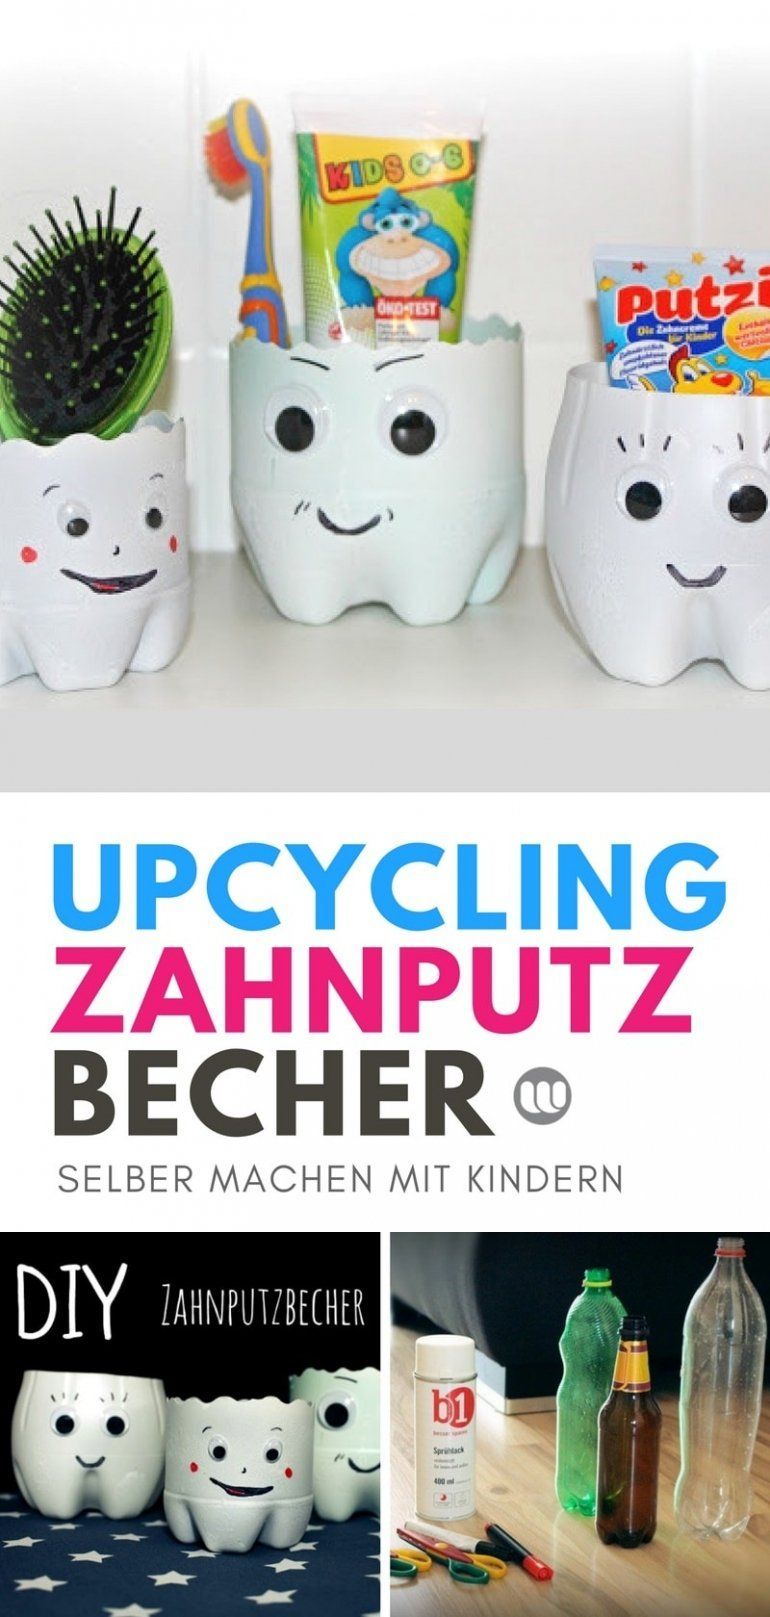 DIY Zahnputzbecher aus Plastikflaschen selbstgemacht -   21 diy basteln recycle
 ideas